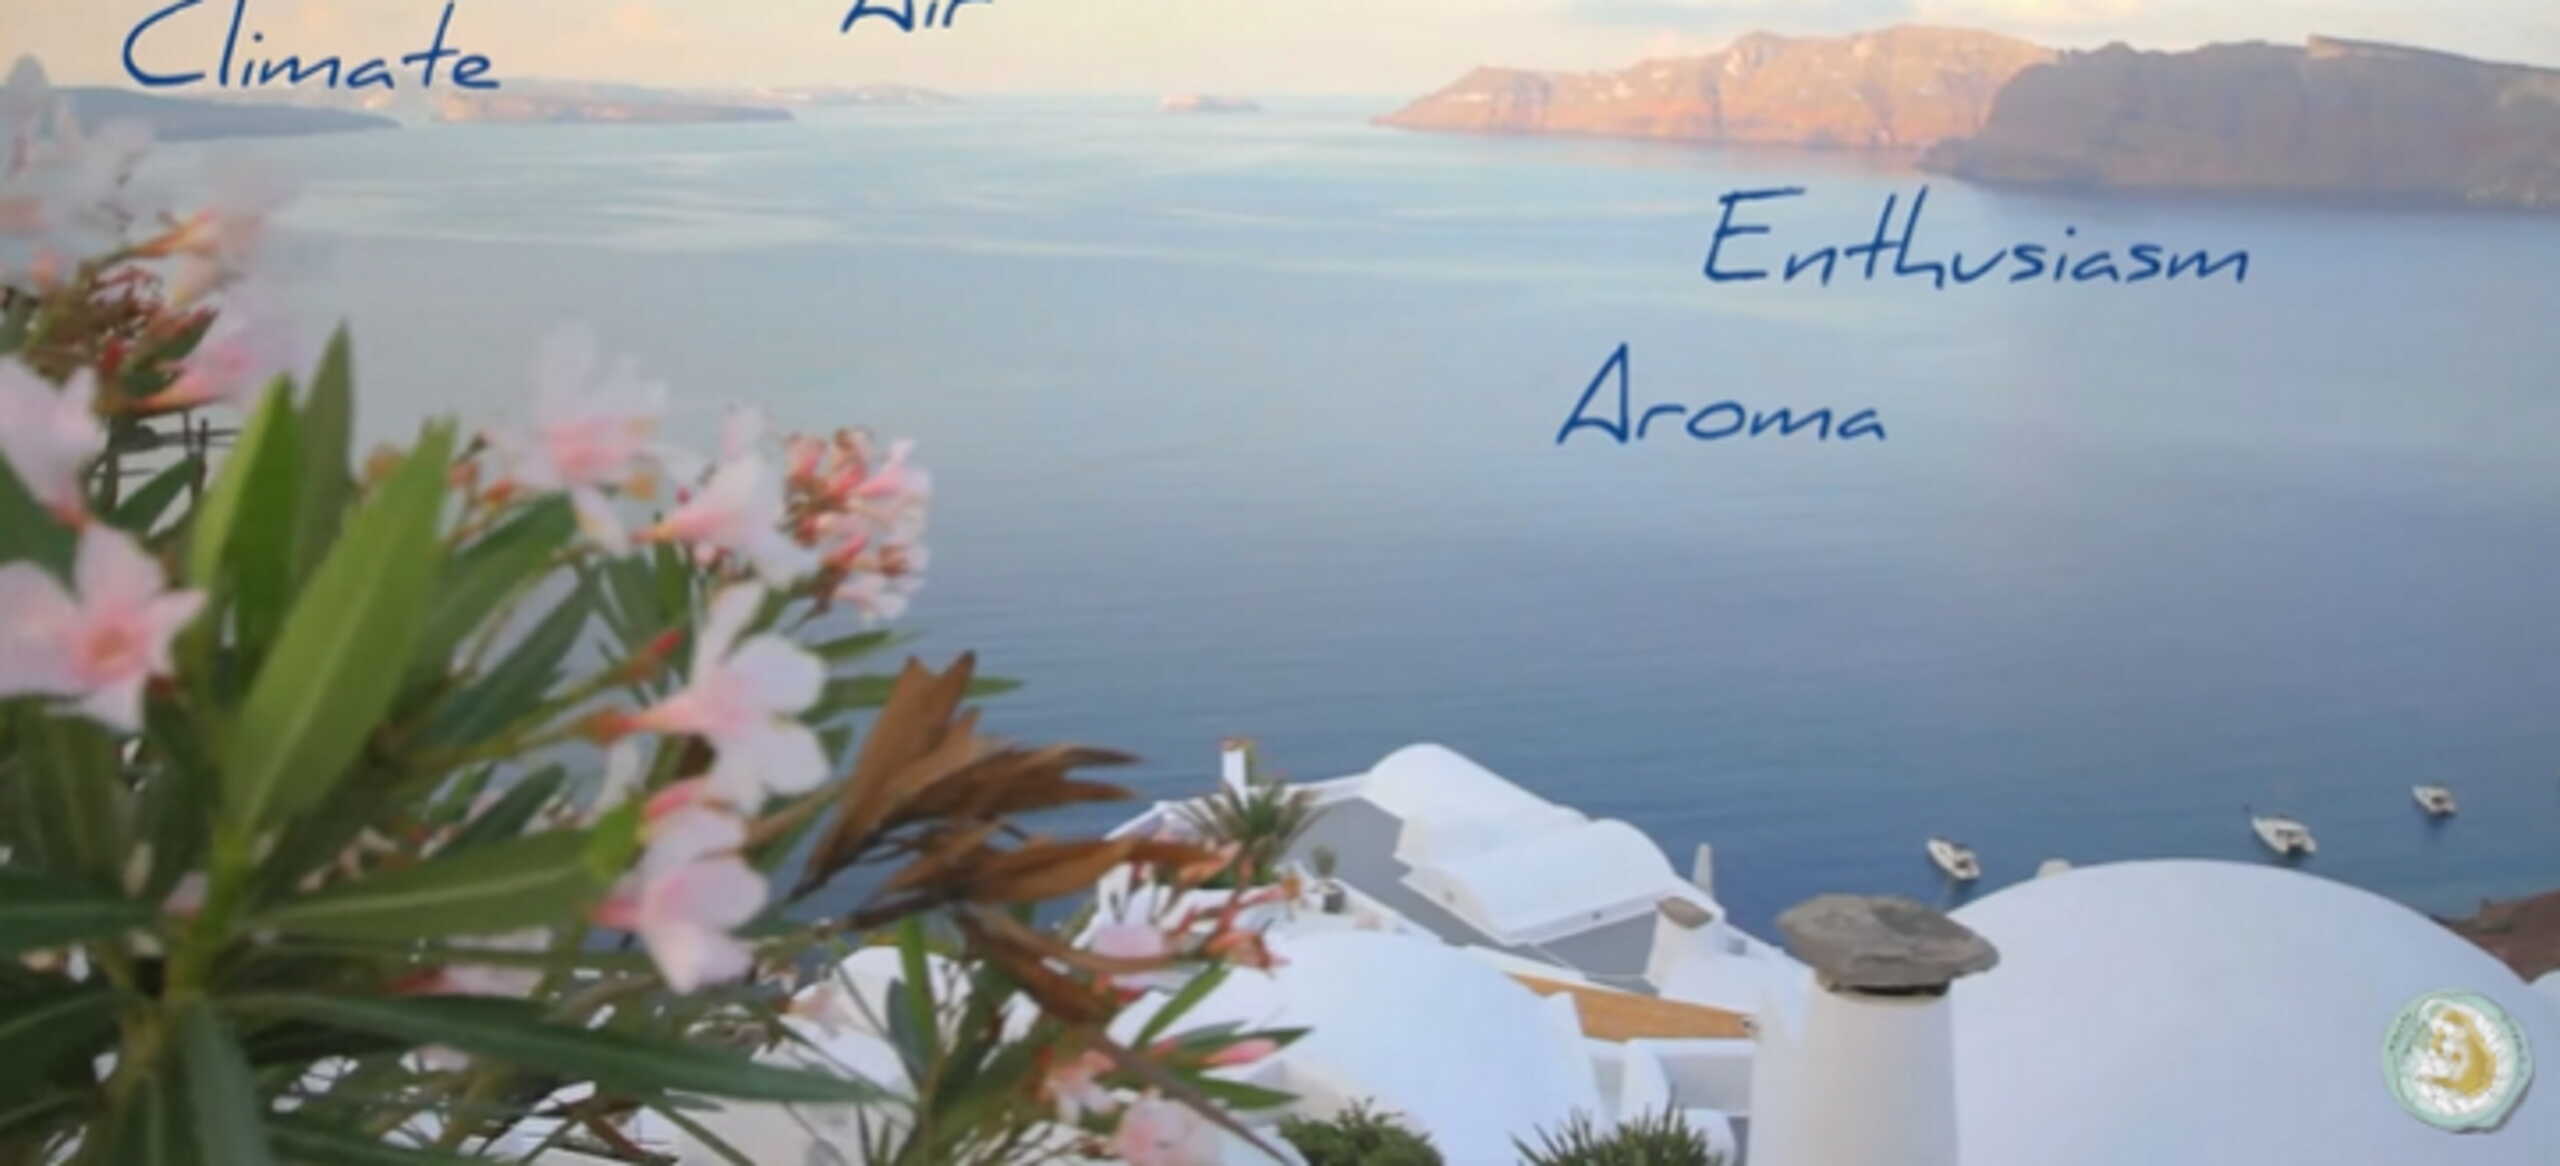 Βίντεο διαφημίζει τη Σαντορίνη σε όλο τον πλανήτη – Οι αγγλικές λέξεις με ελληνική ρίζα για τις ομορφιές του νησιού